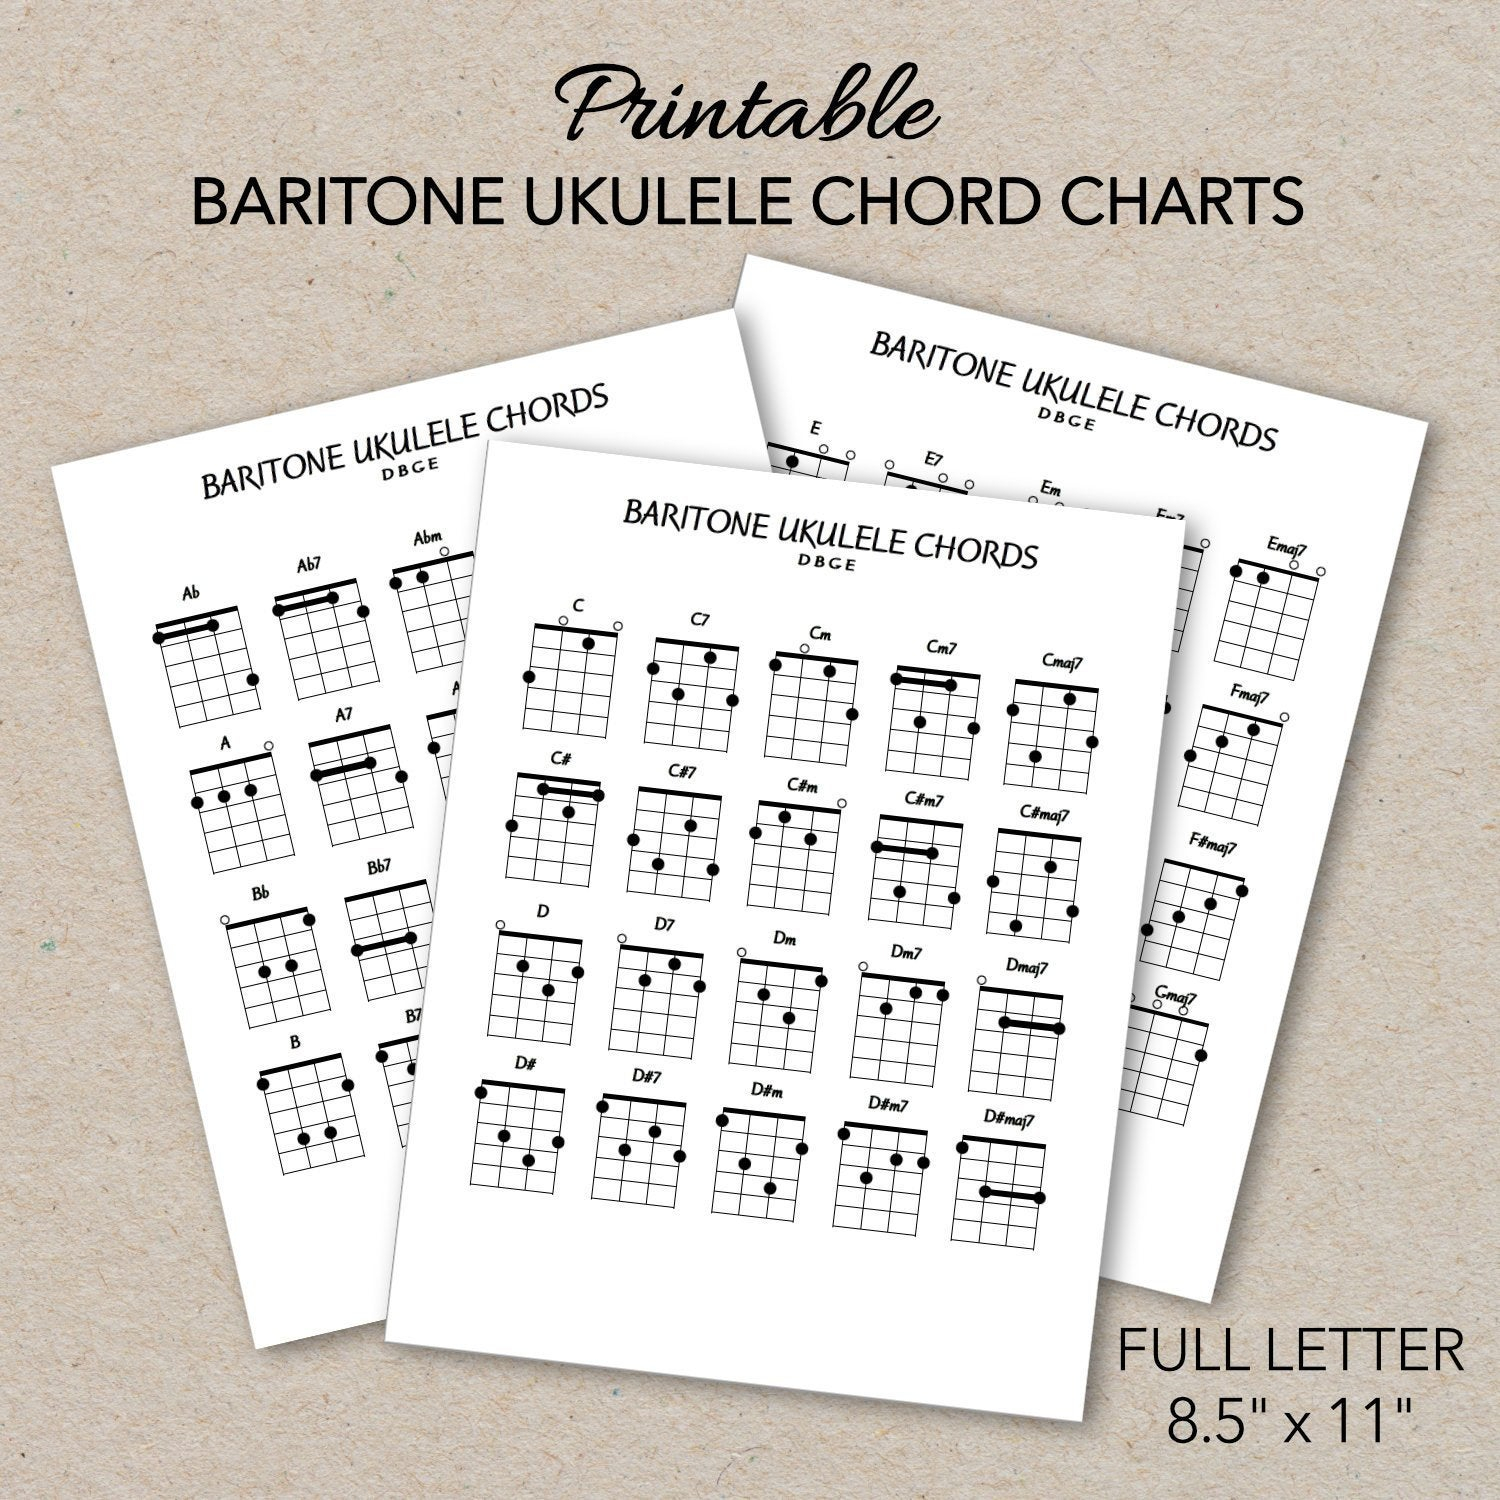 Baritone Ukulele Chords Baritone Ukulele Chord Charts Printable Pdf Format Letter Size Print At Home